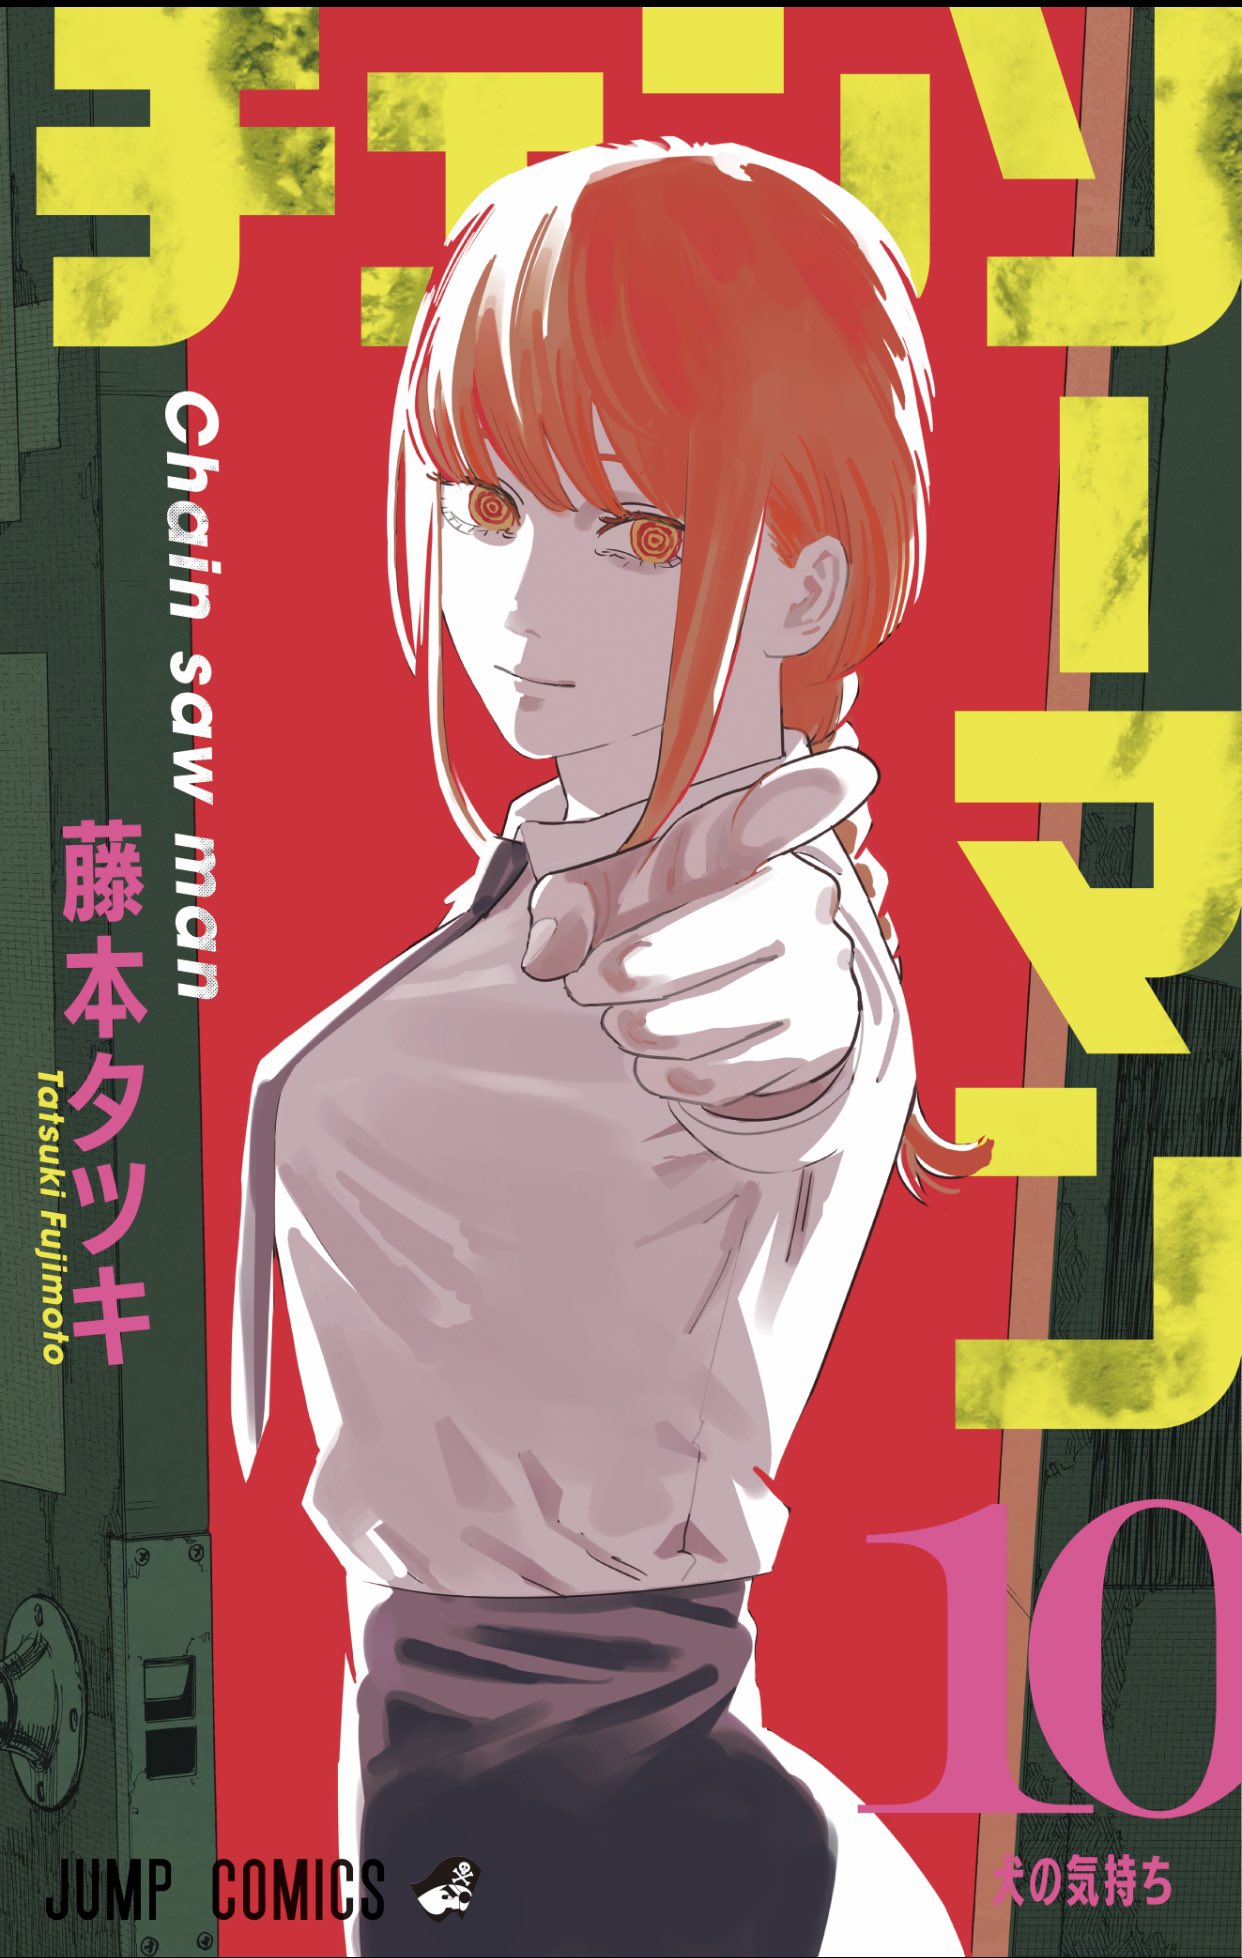 manga bán chạy nhất năm 2021